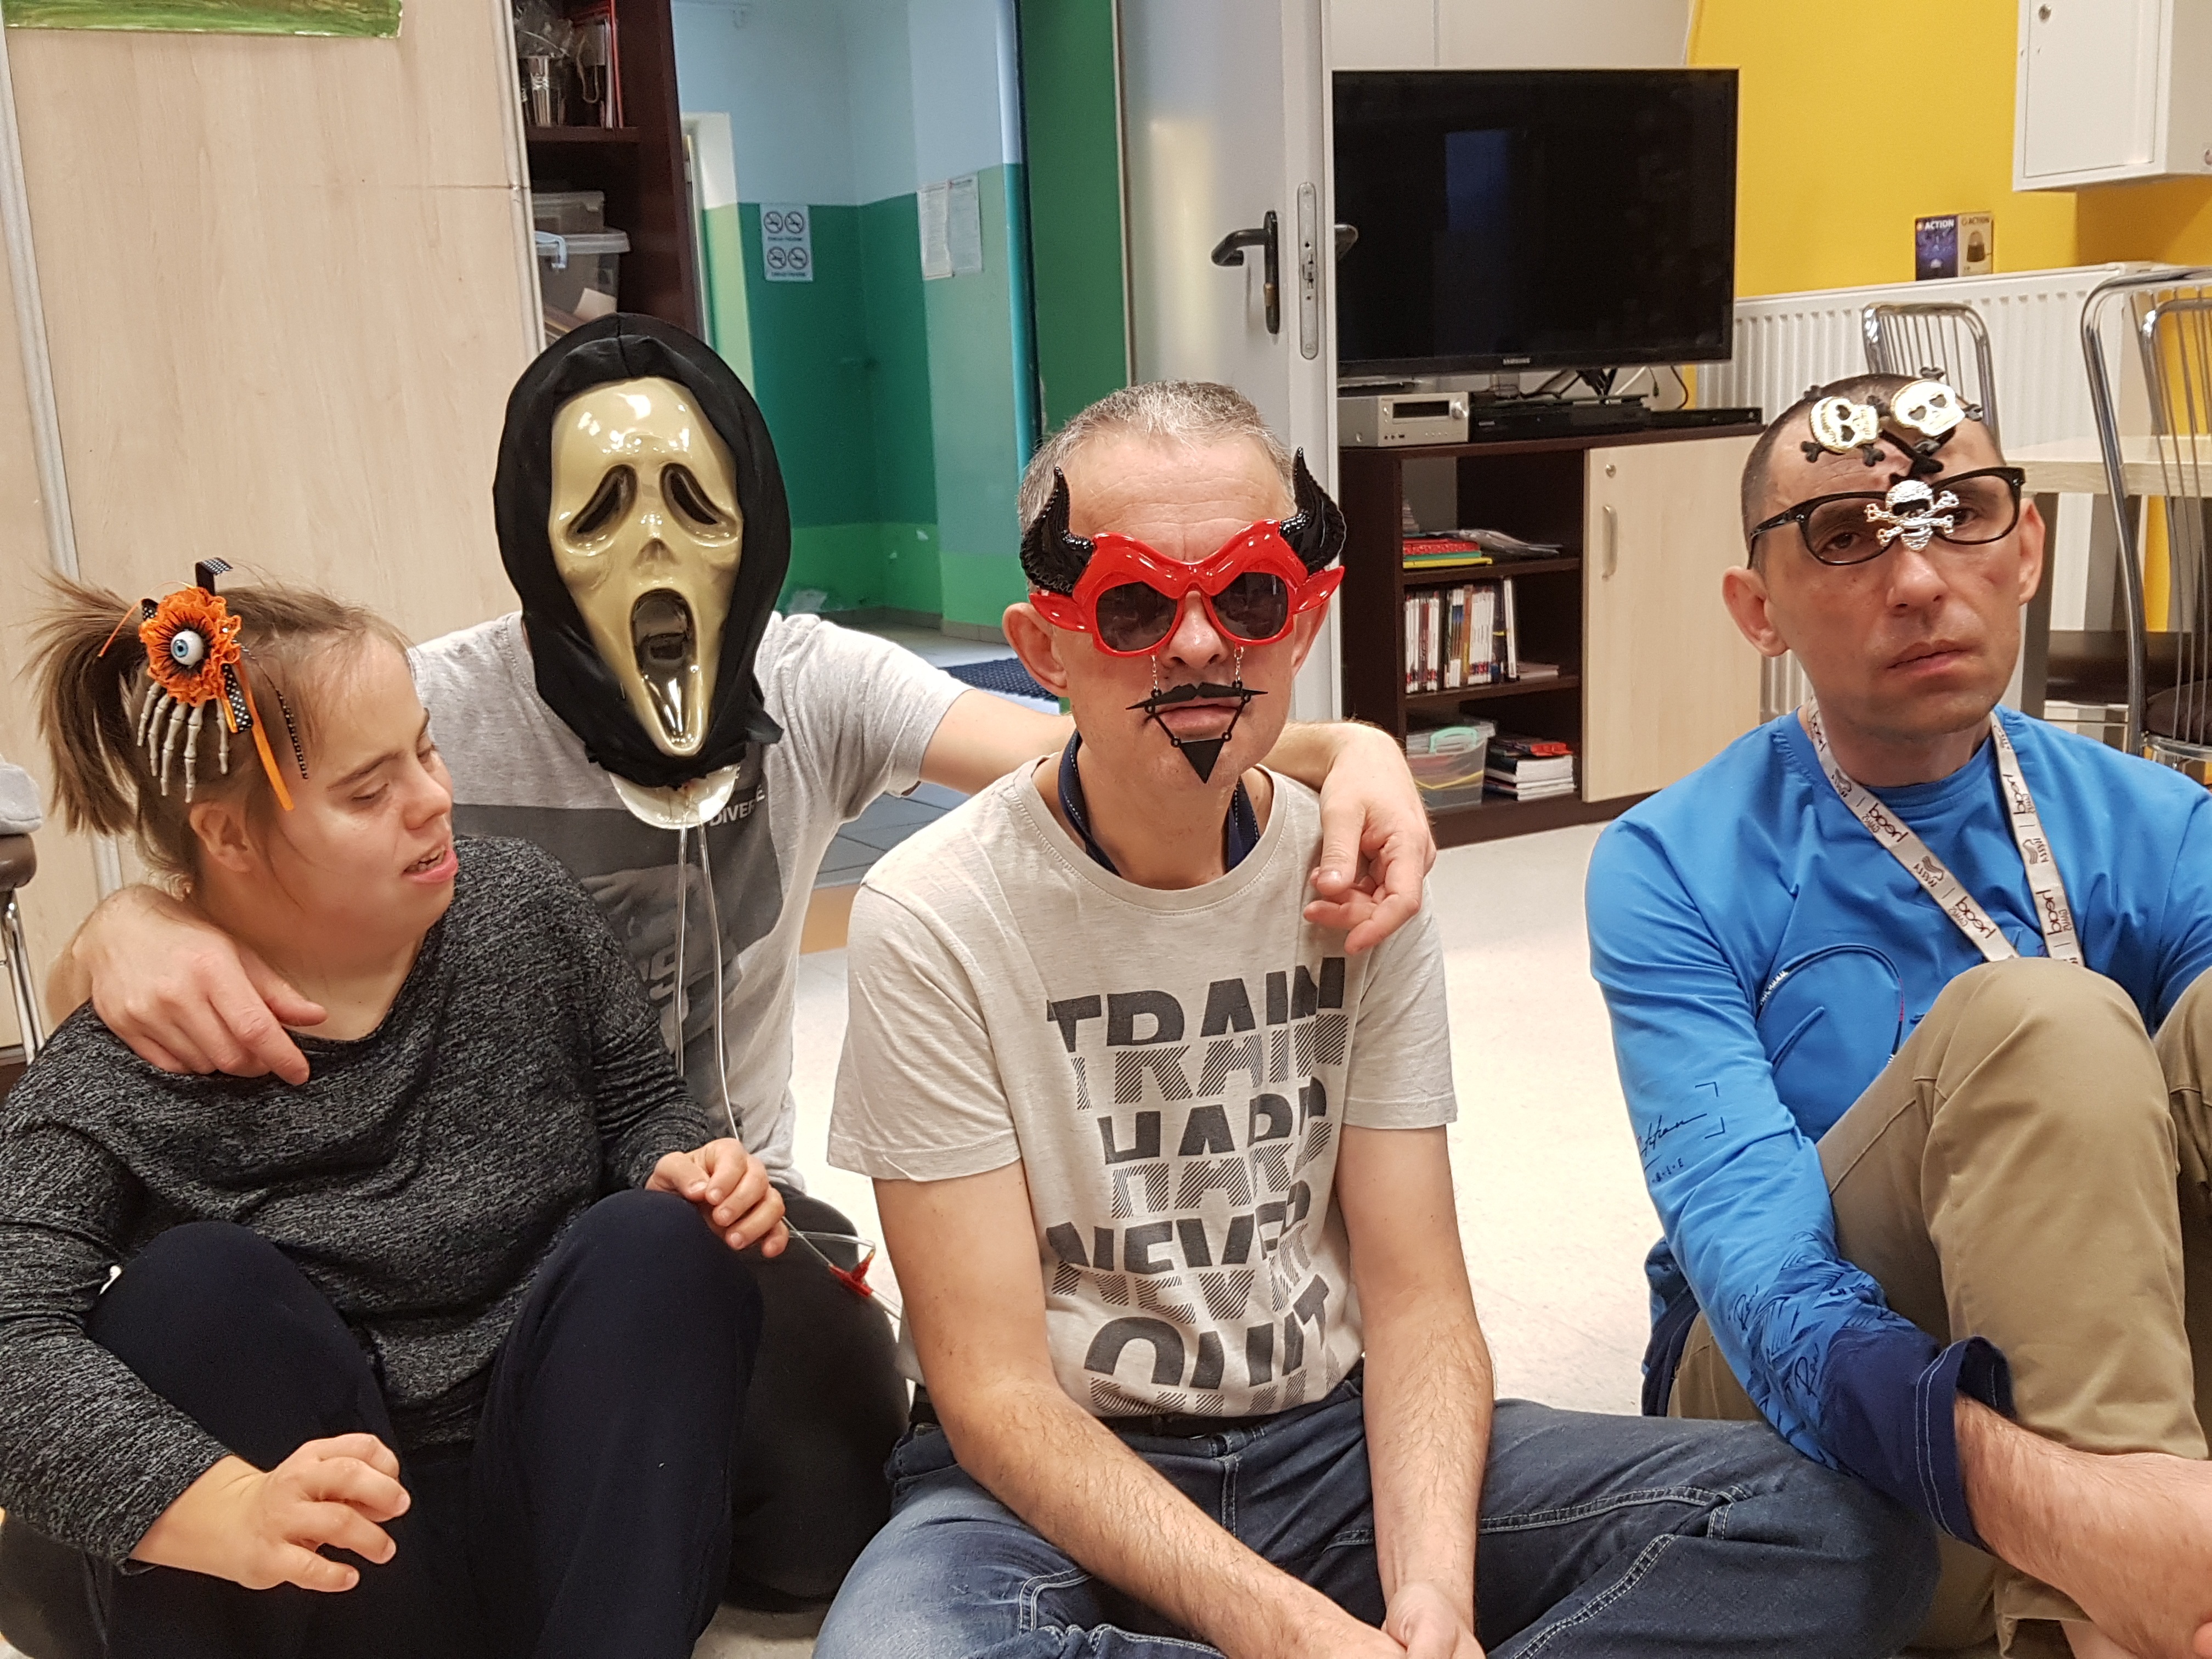 W sali siedzi troje uczestników pomiędzy którymi kuca terapeuta. Od lewej strony, pierwsza osoba ma na głowie opaskę, druga maskę, trzecia maskę, a czwarta ozdobne okulary.